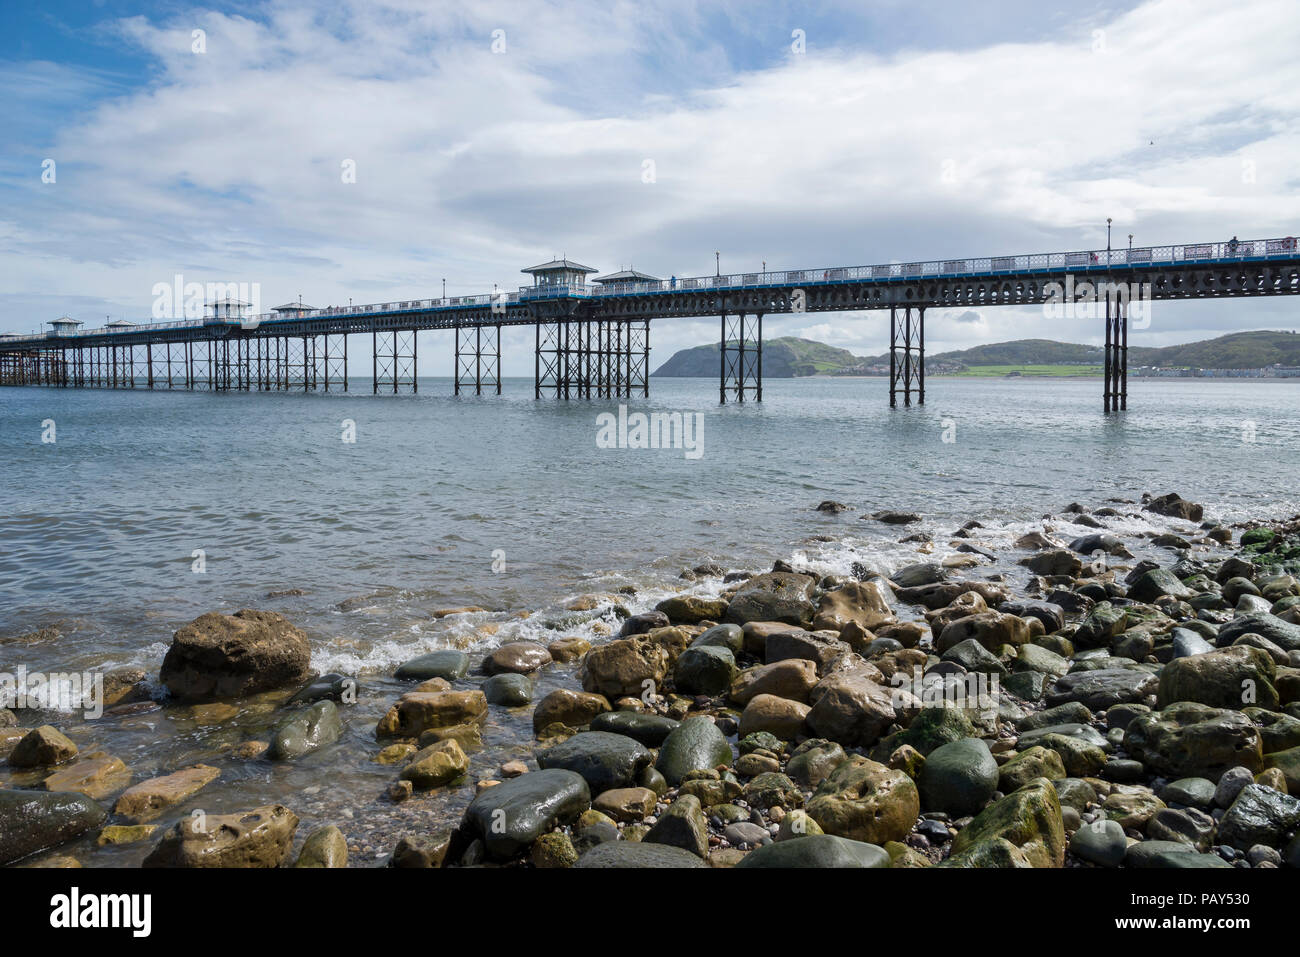 The beautiful historic pier at Llandudno, North Wales, UK Stock Photo